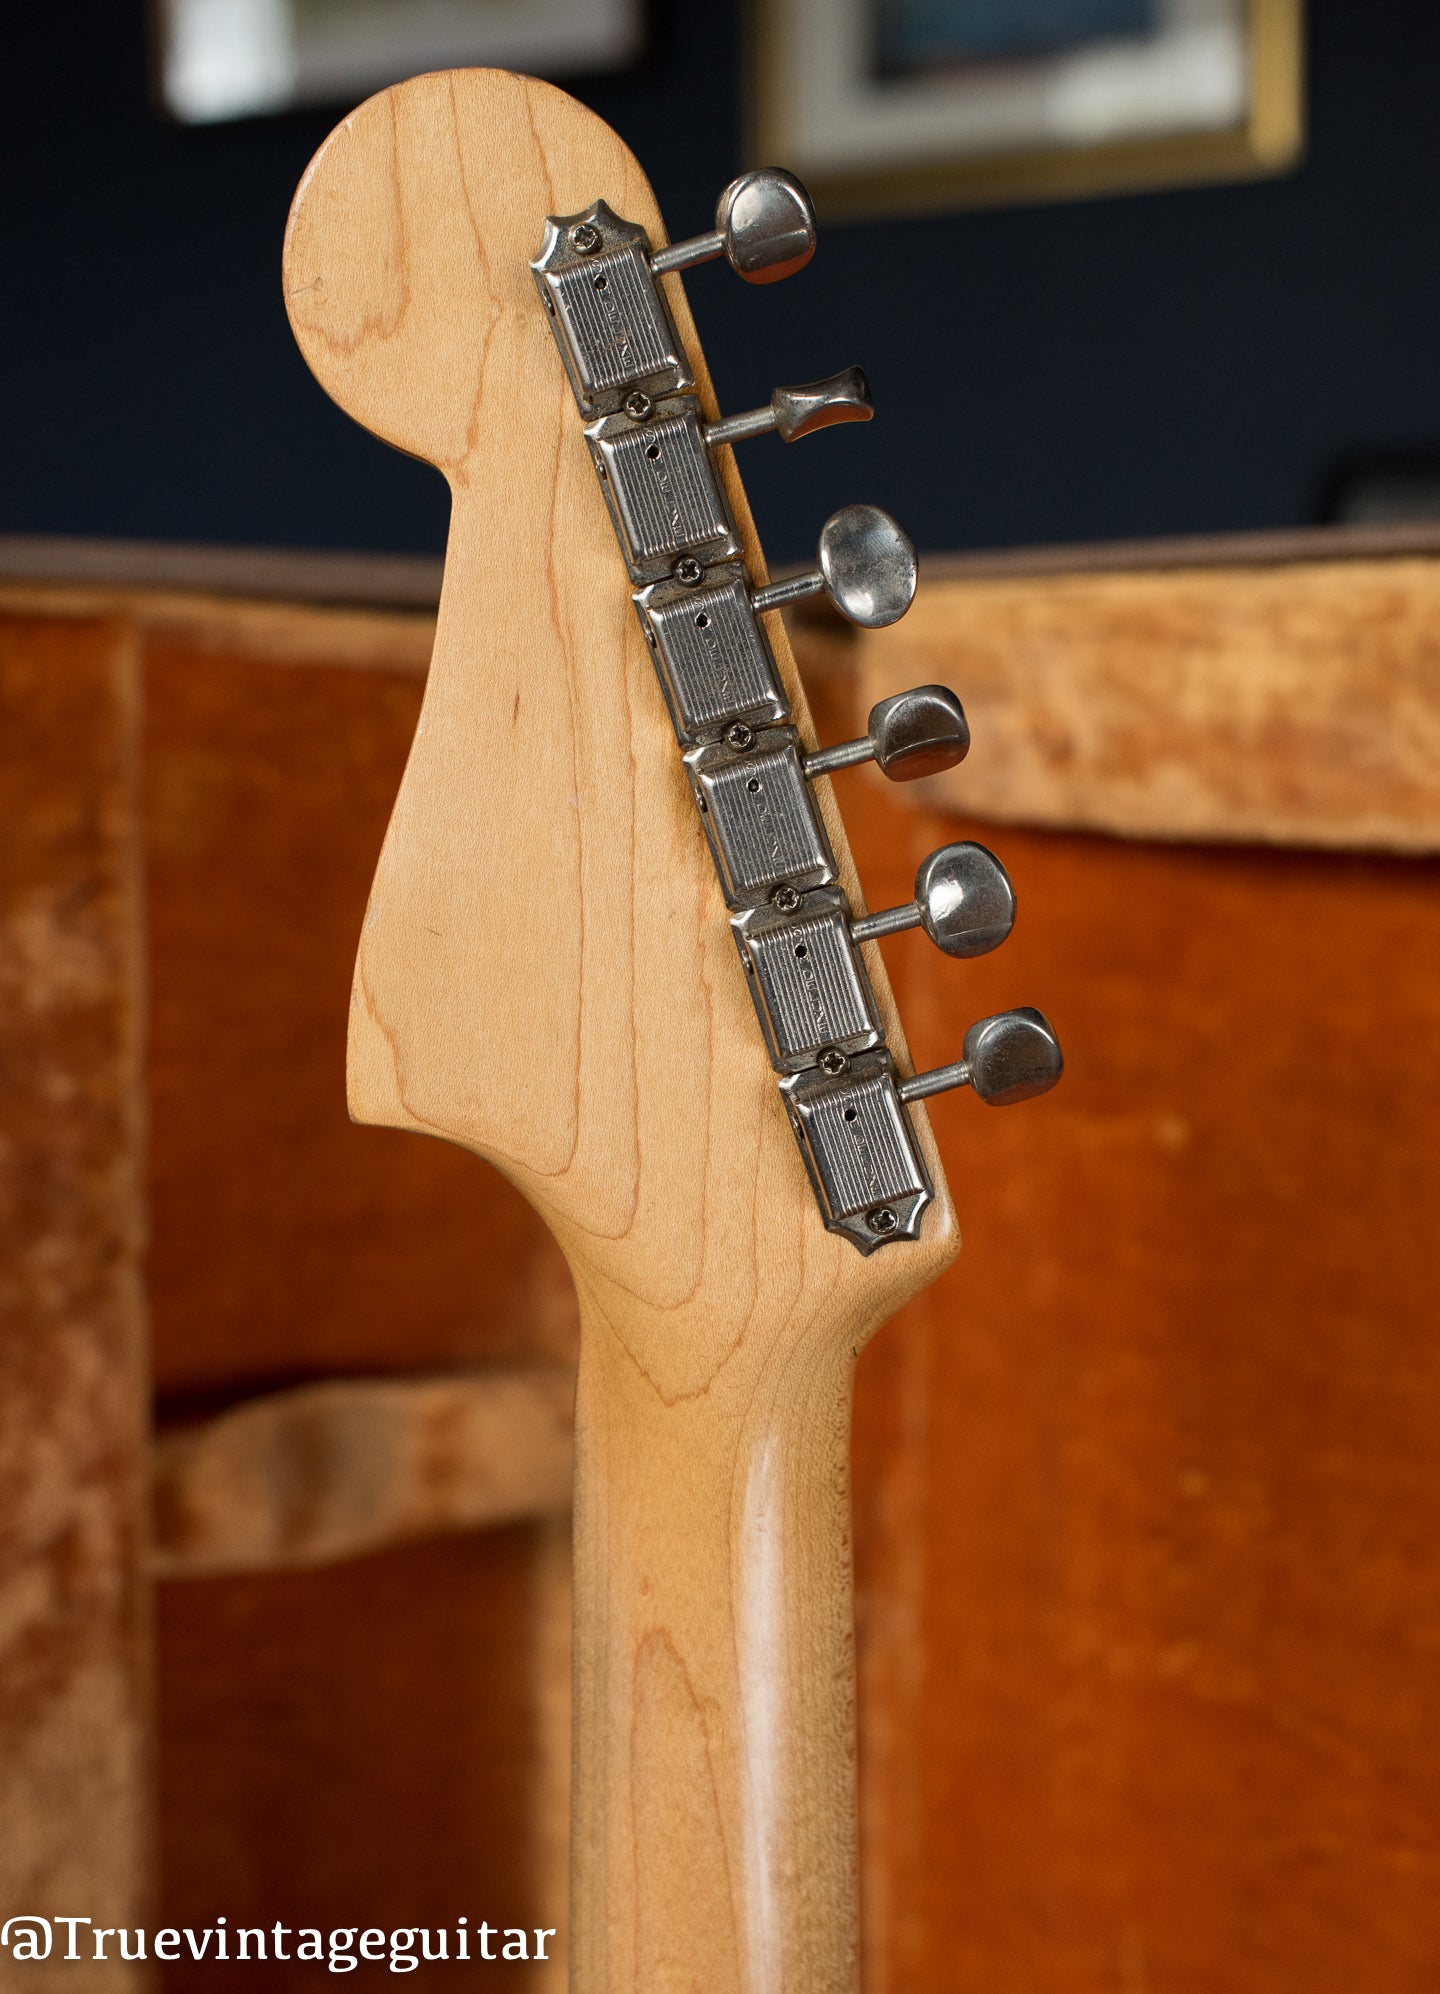 Kluson tuners, back of neck, Vintage 1961 Fender Jazzmaster electric guitar